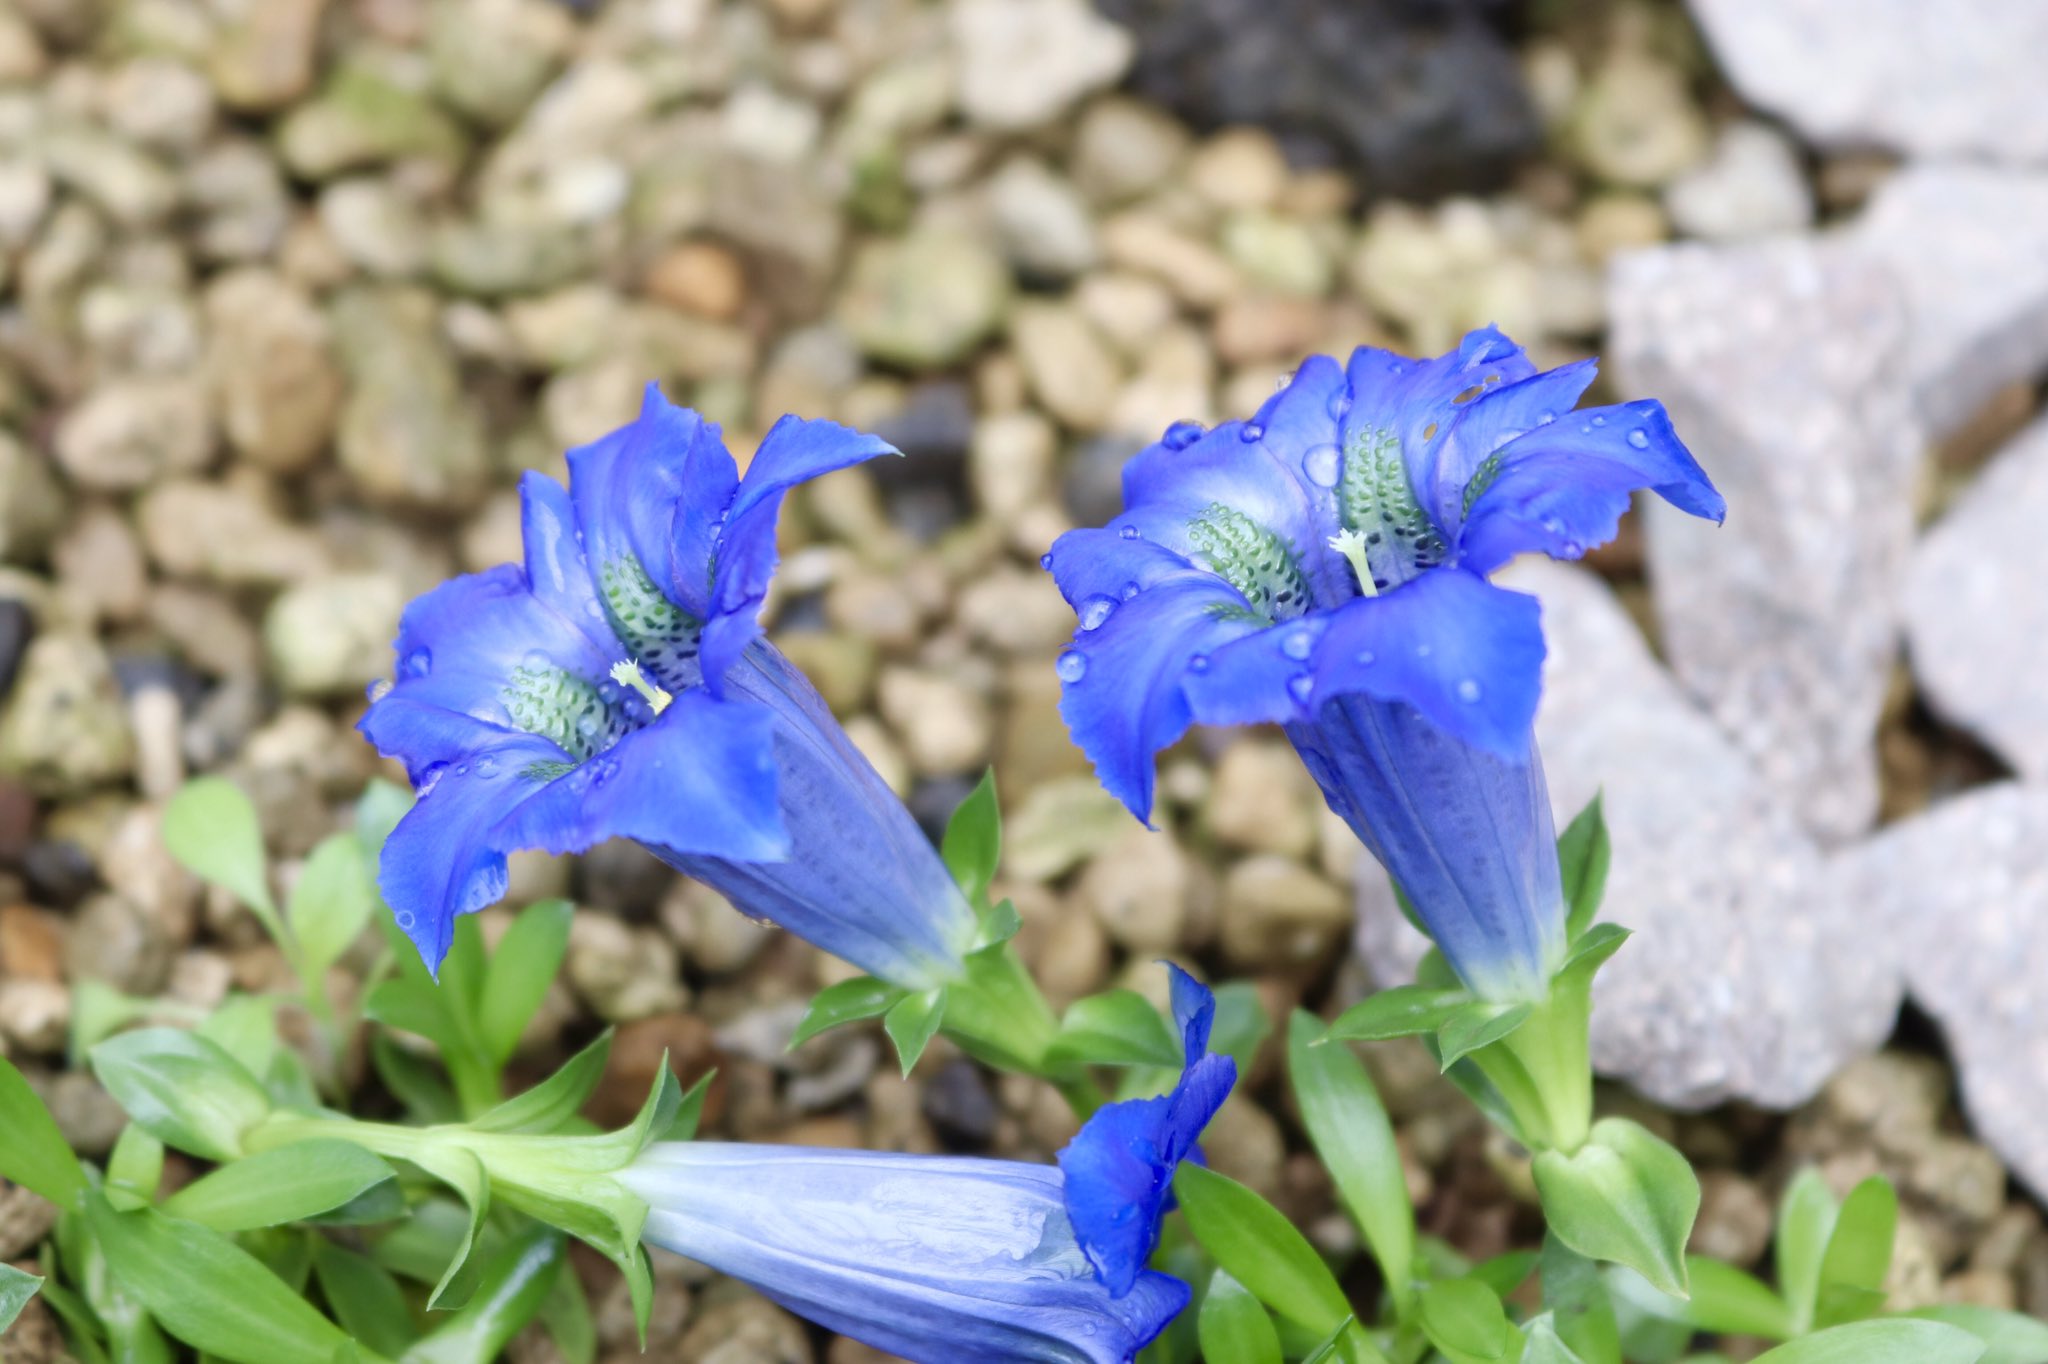 咲くやこの花館 パッと目が覚めるような綺麗な青いこの花は ゲンチアナ アコーリス です 和名は チャボリンドウ と呼ばれ ヨーロッパアルプスの三大名花の一つです 開きかけた蕾のねじれも美しいので 涼しい高山植物室で見つけてください 咲くや